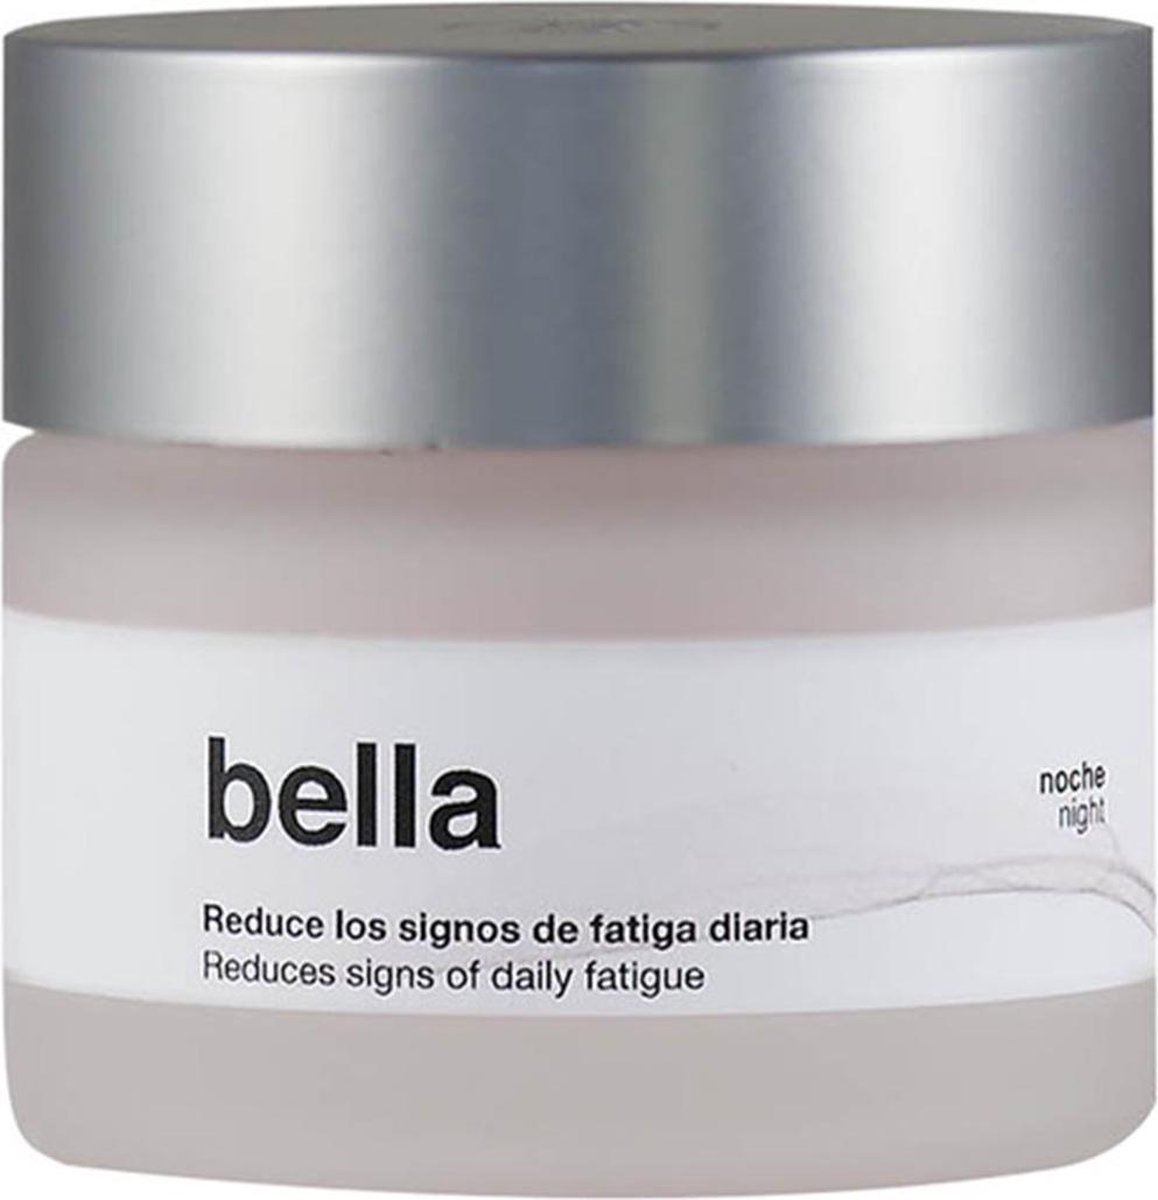 Bella Aurora Bella Night Repairs Gezichtscrème 50ml